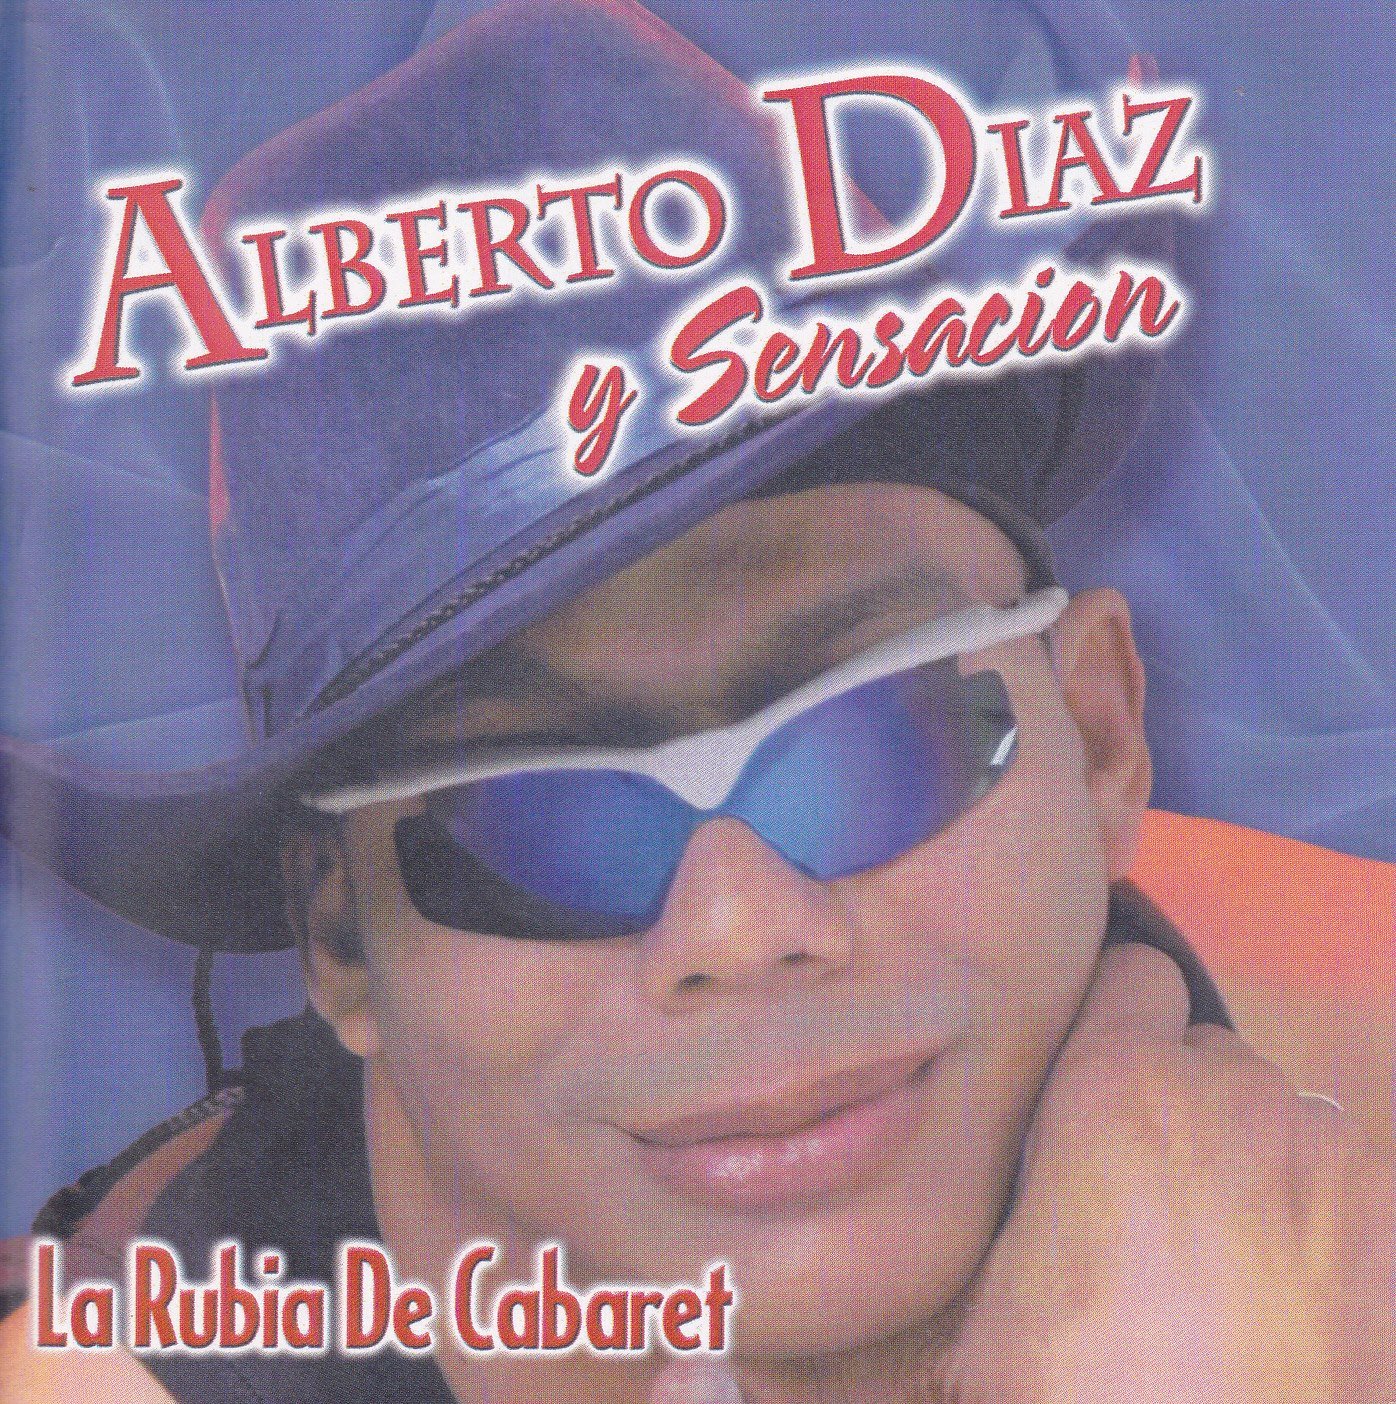 Alberto Diaz y Grupo Sensación cumple ya 45 años en la música y el arte escénico-